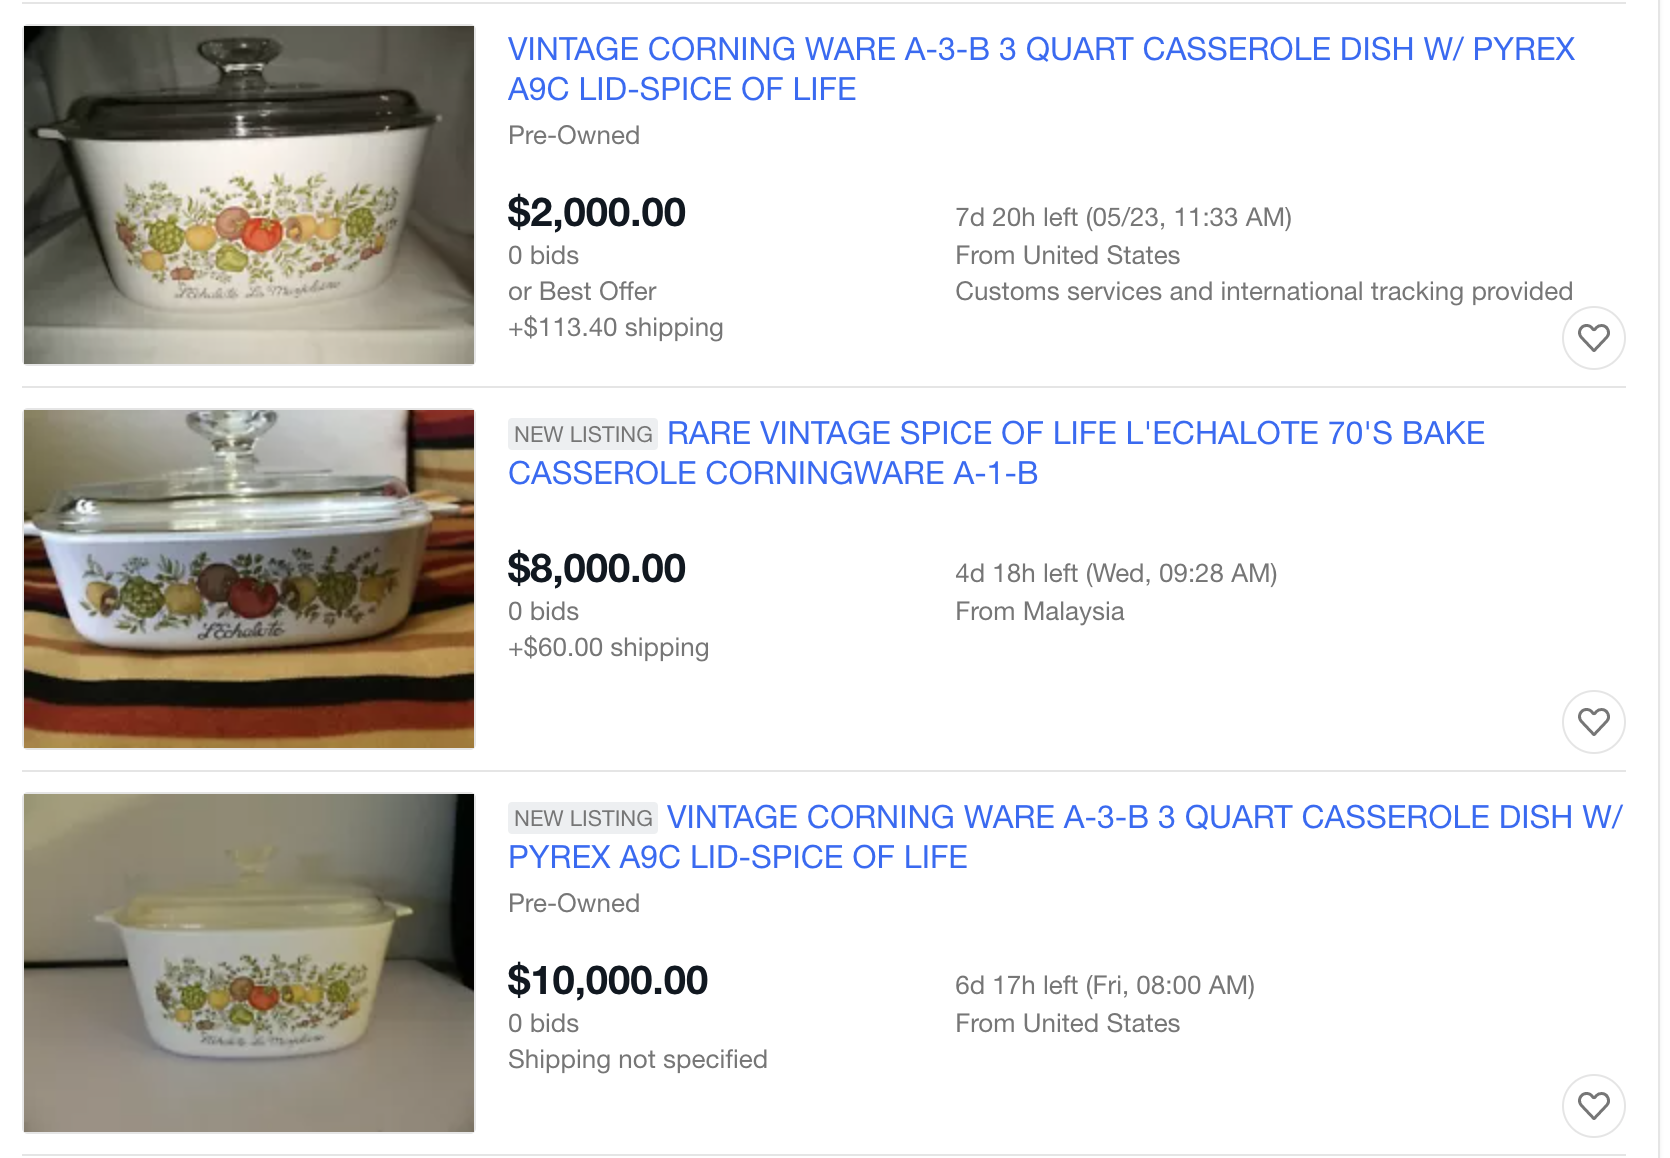 eBay listings for CorningWare